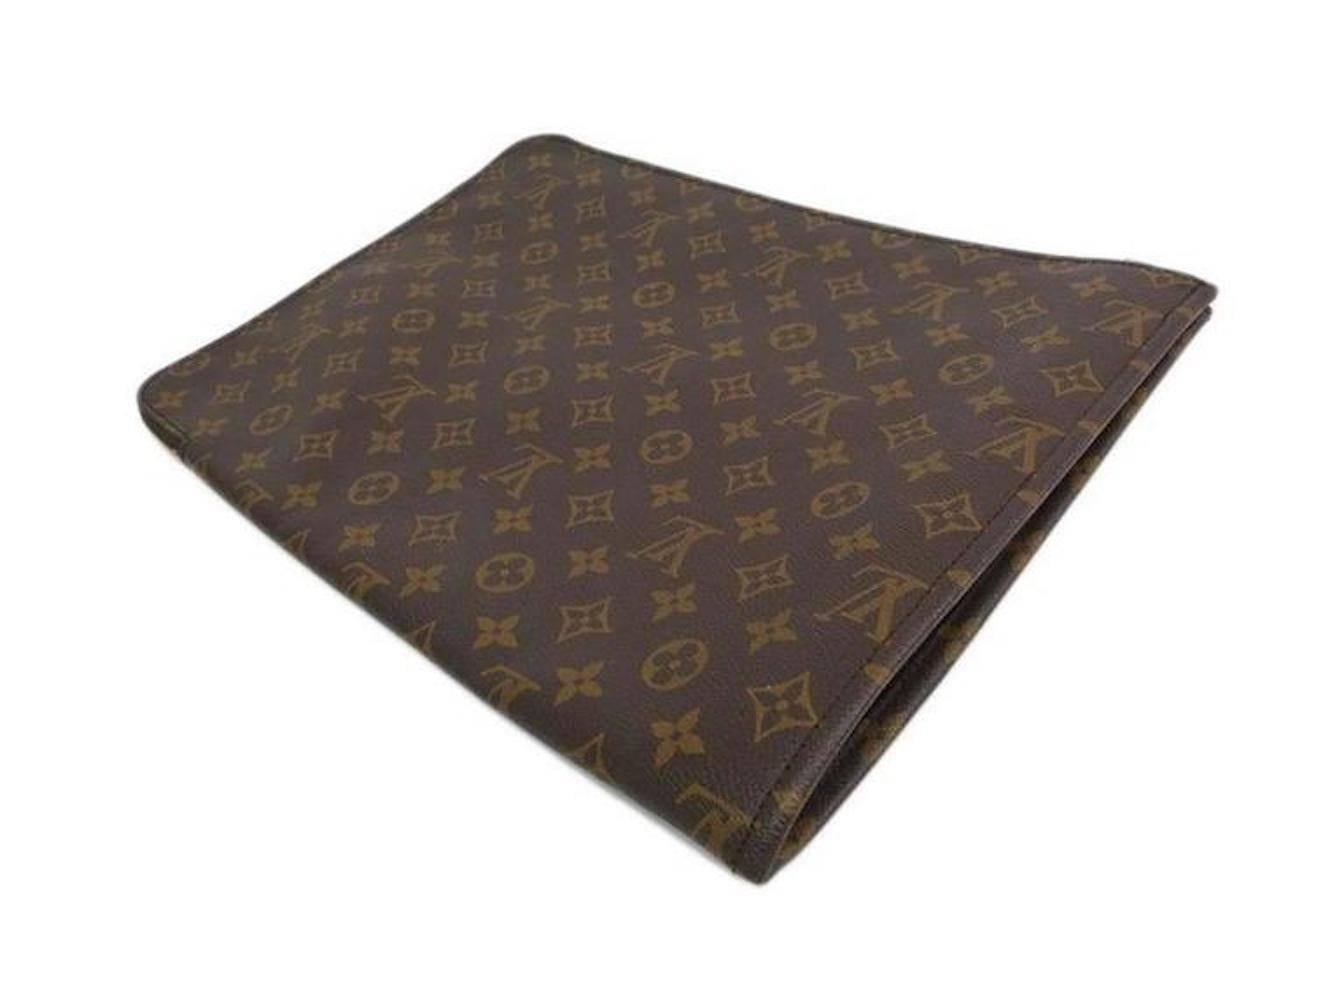 Black Louis Vuitton Monogram Men's Women's Carryall Laptop Travel Briefcase Clutch Bag